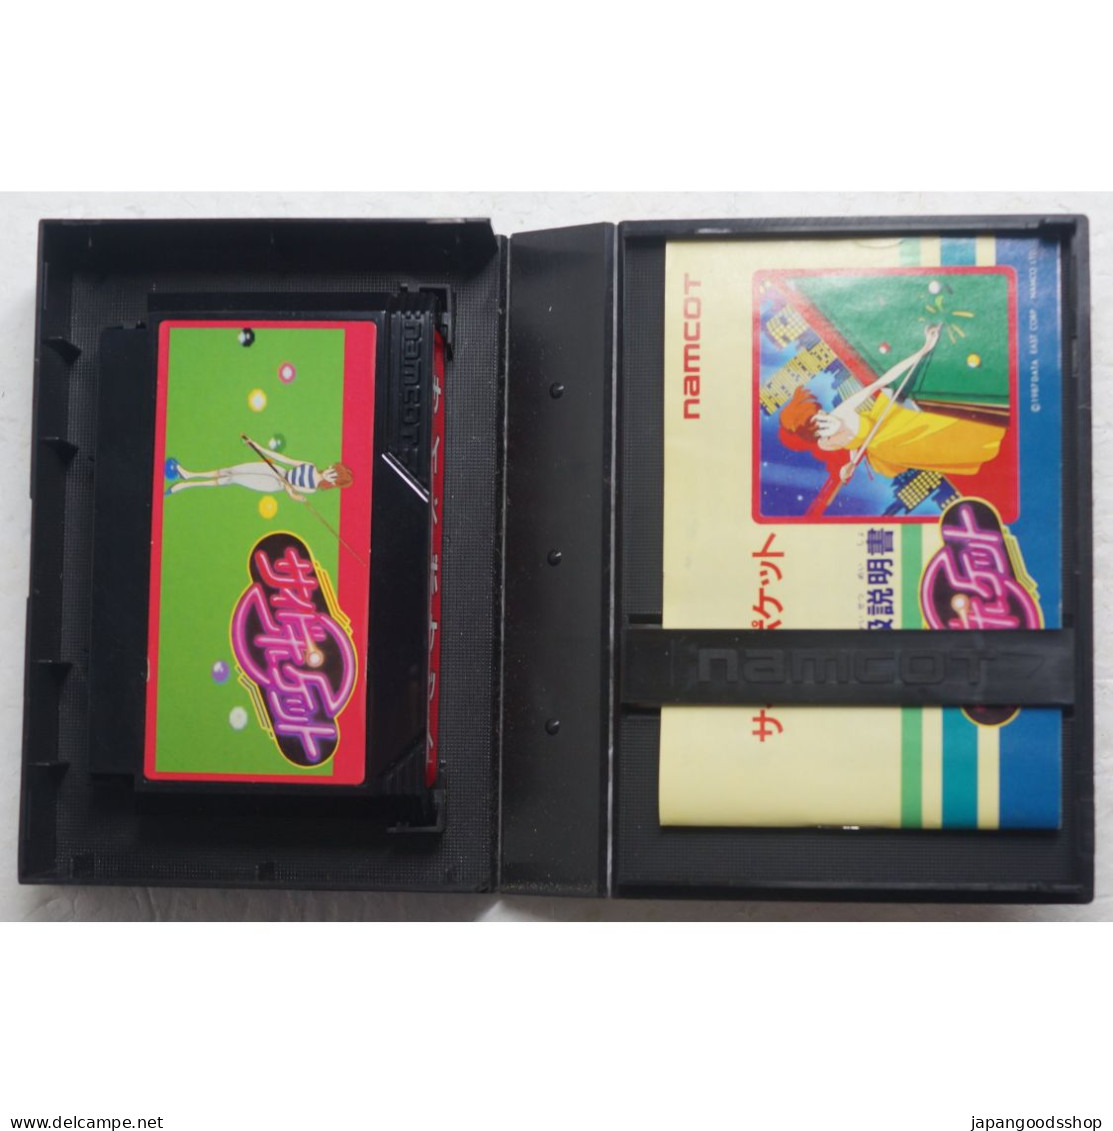 Side Pocket Famicom Game - Famicom